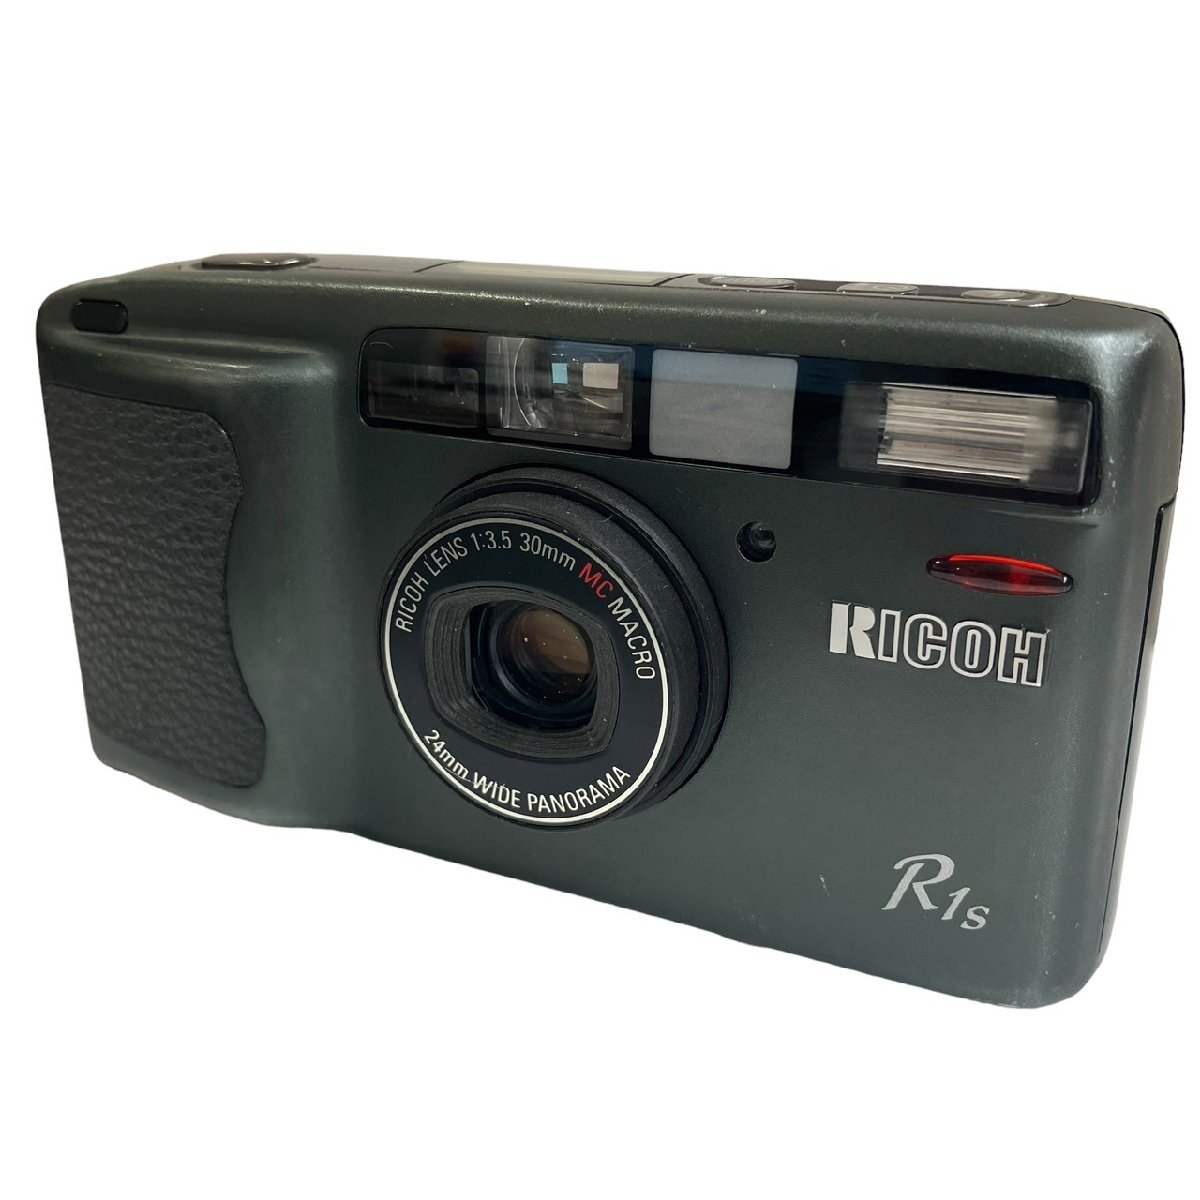 RICOH リコー R1S コンパクトフィルムカメラ 30mm F3.5 MC MACRO 24mm WIDE PANORAMA 起動確認済_画像1